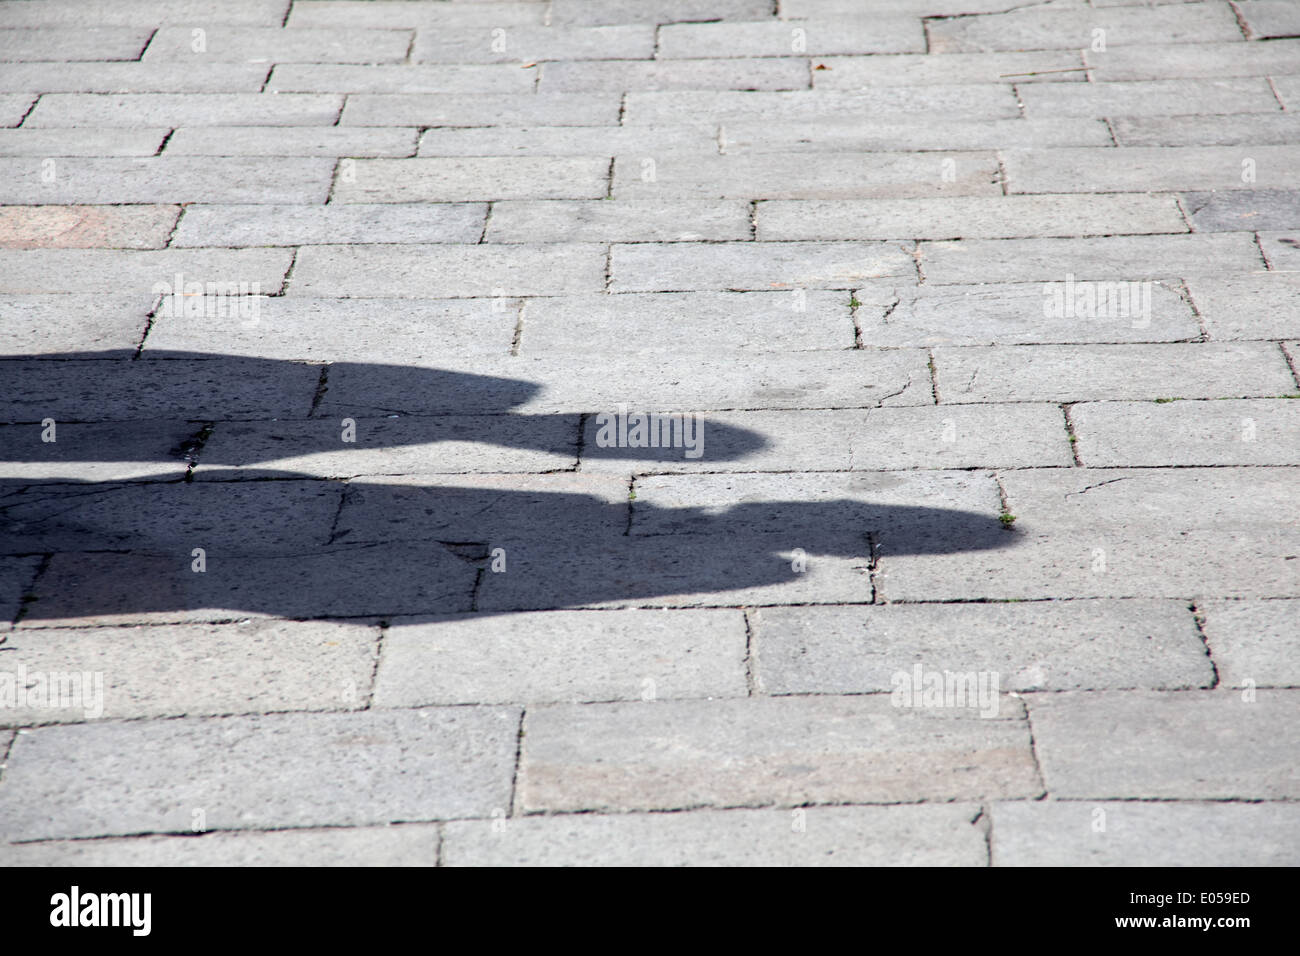 Shades of a pair, Schatten eines Paares Stock Photo